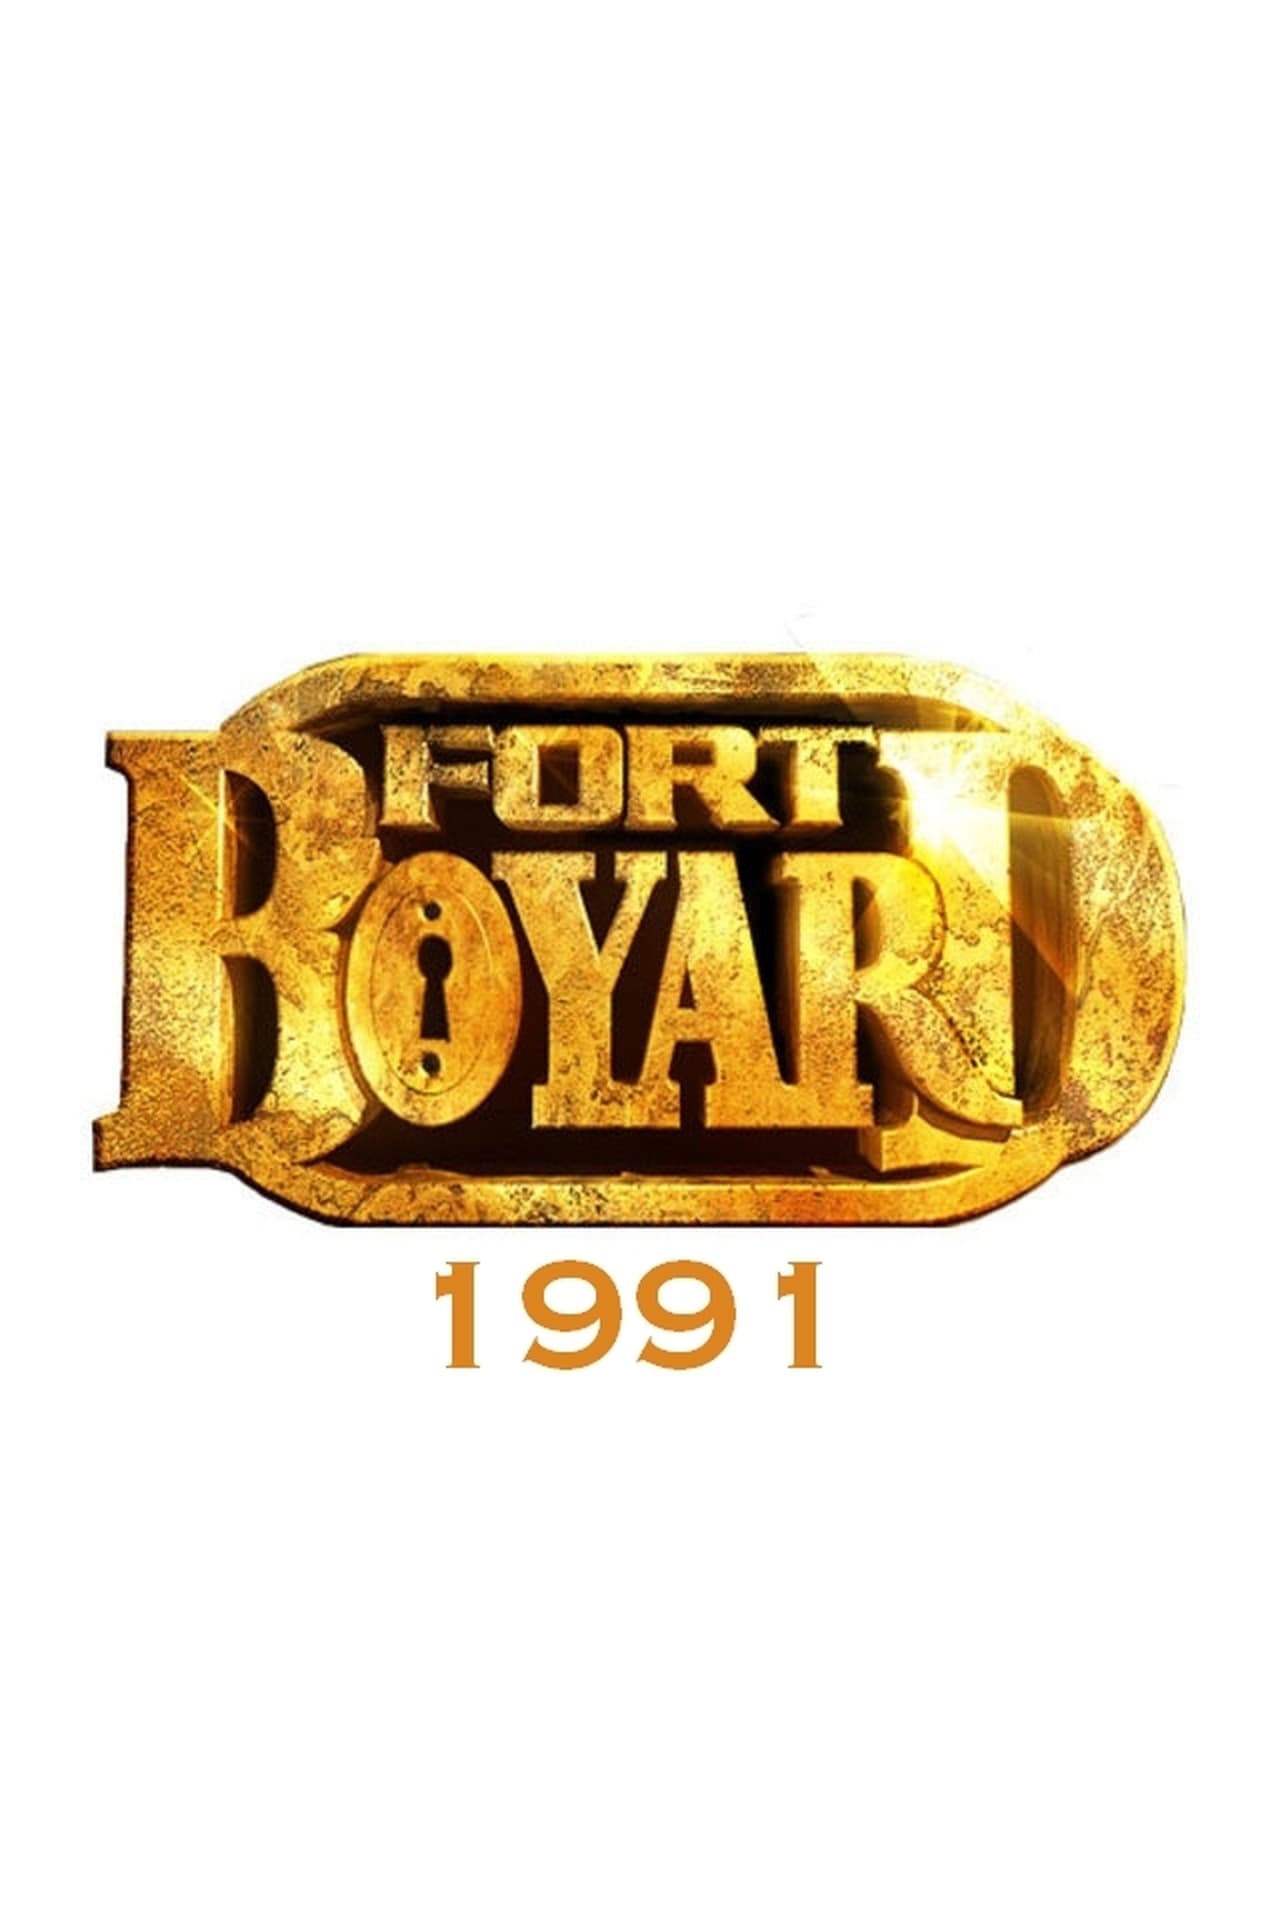 Fort Boyard Season 2